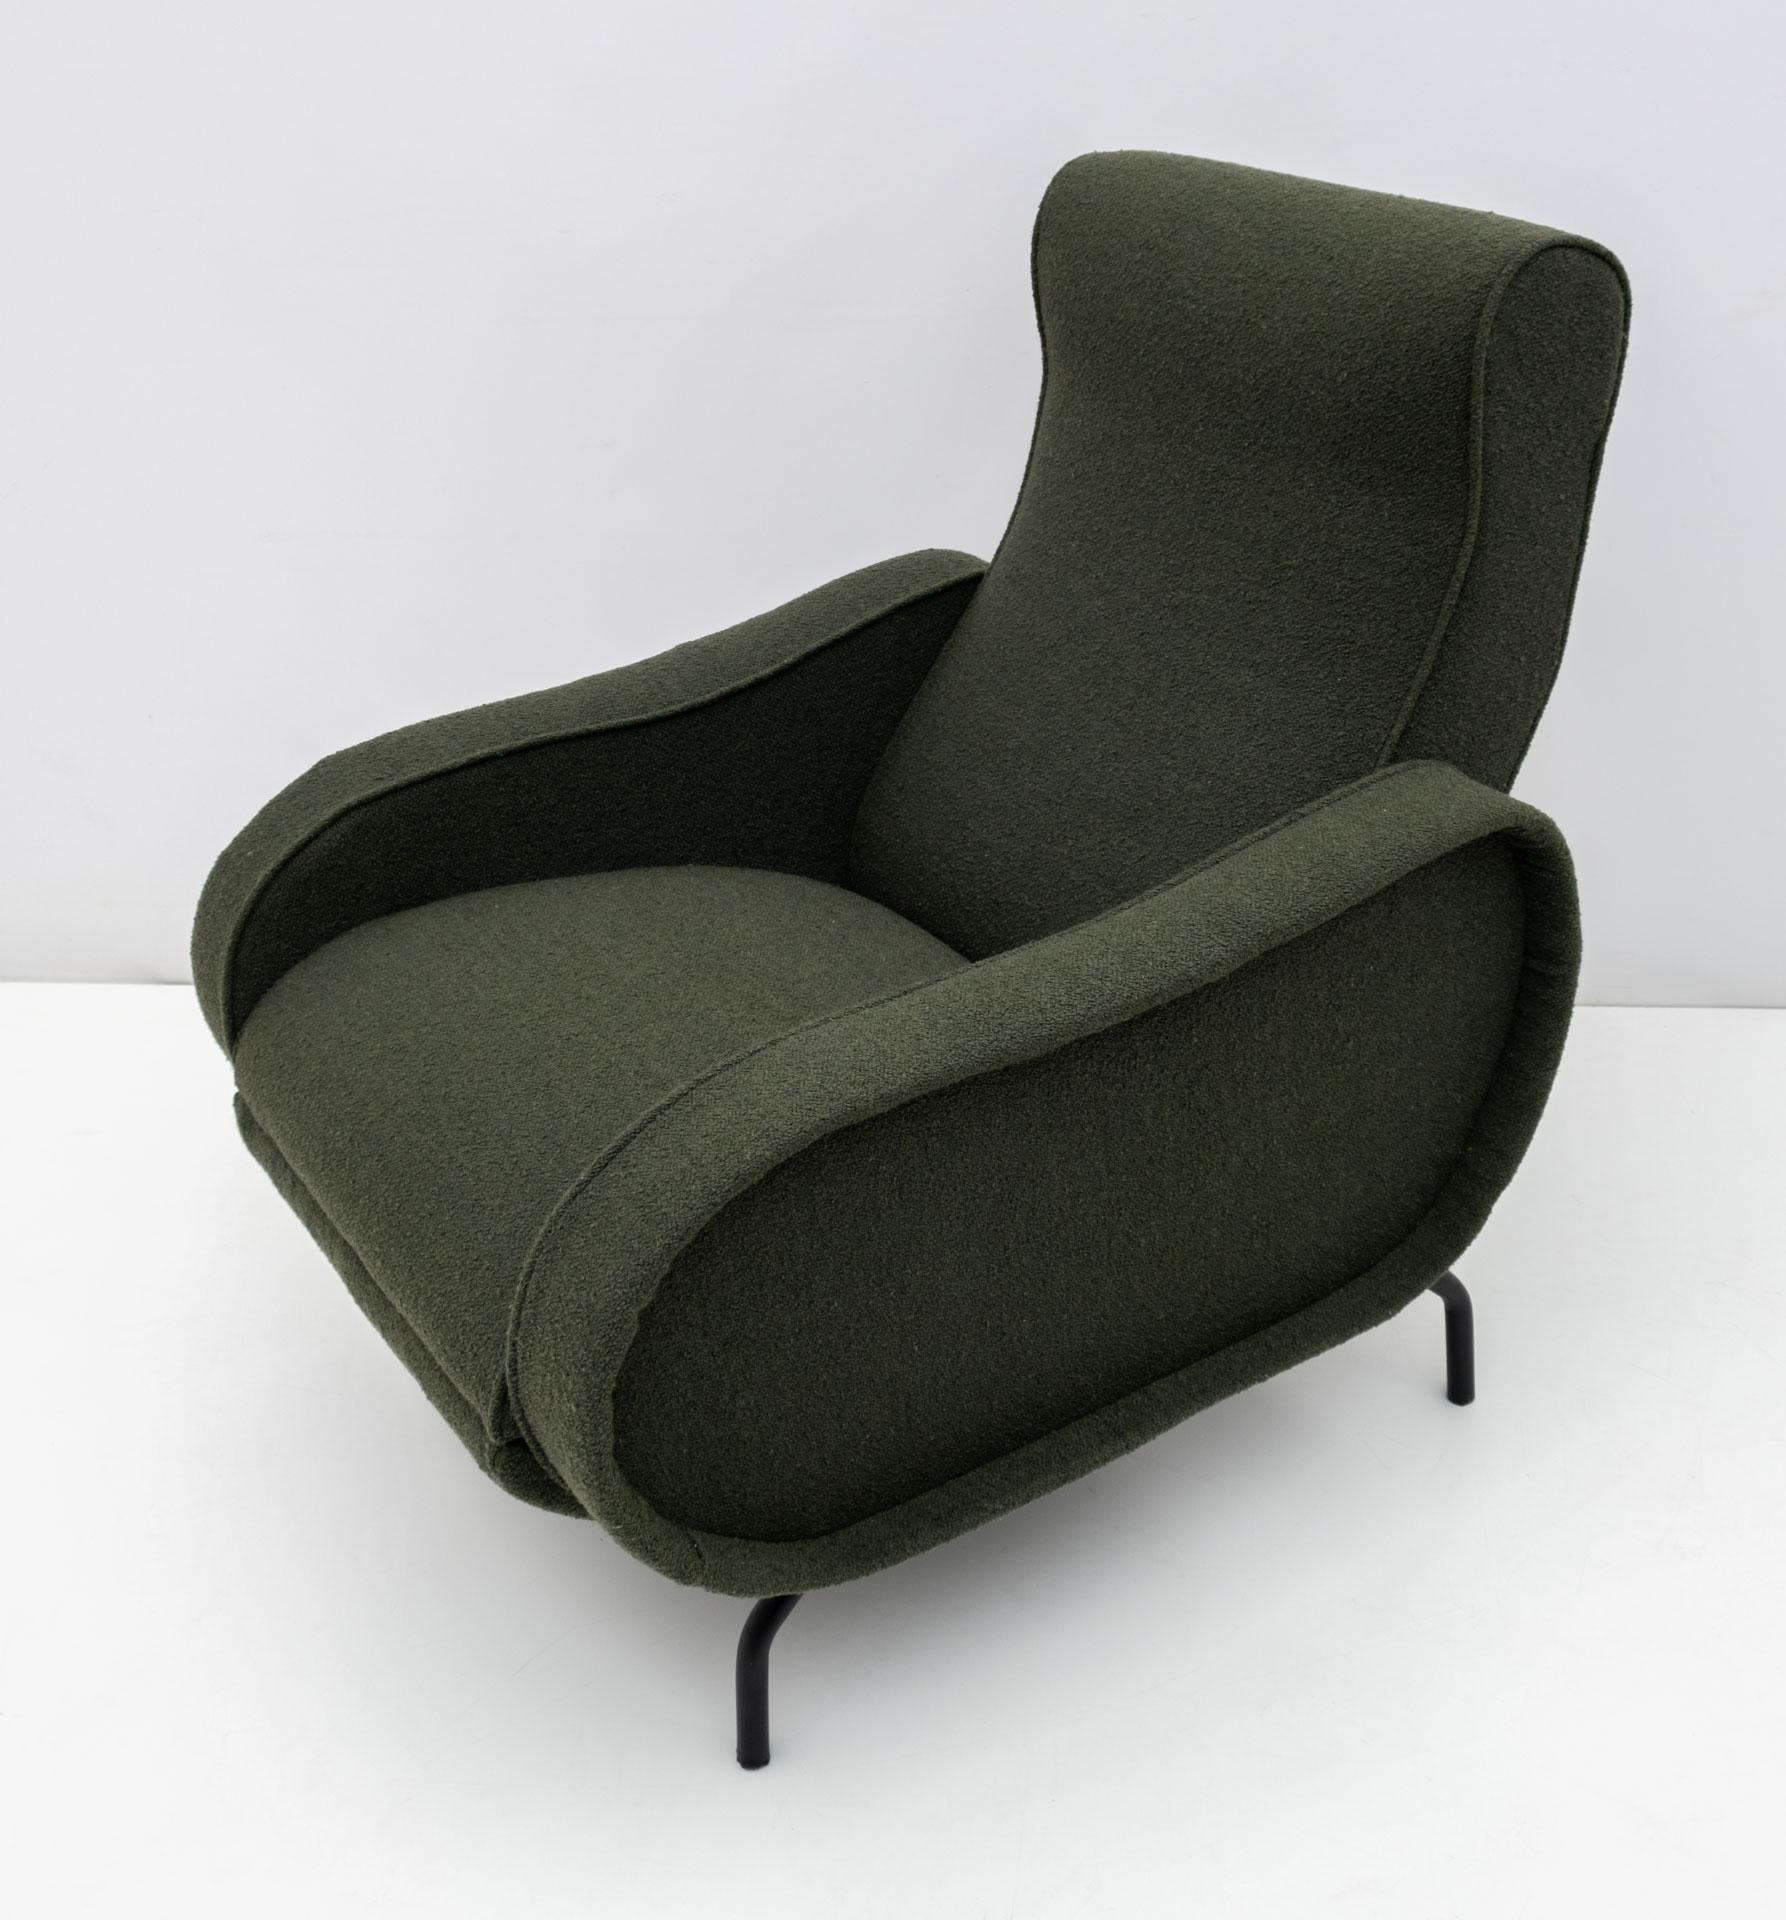 Fauteuil inclinable conçu par Marco Zanuso dans les années 1950, le fauteuil a été restauré et tapissé de tissu Bouclè vert anglais.

Le fauteuil allongé mesure 153 cm.